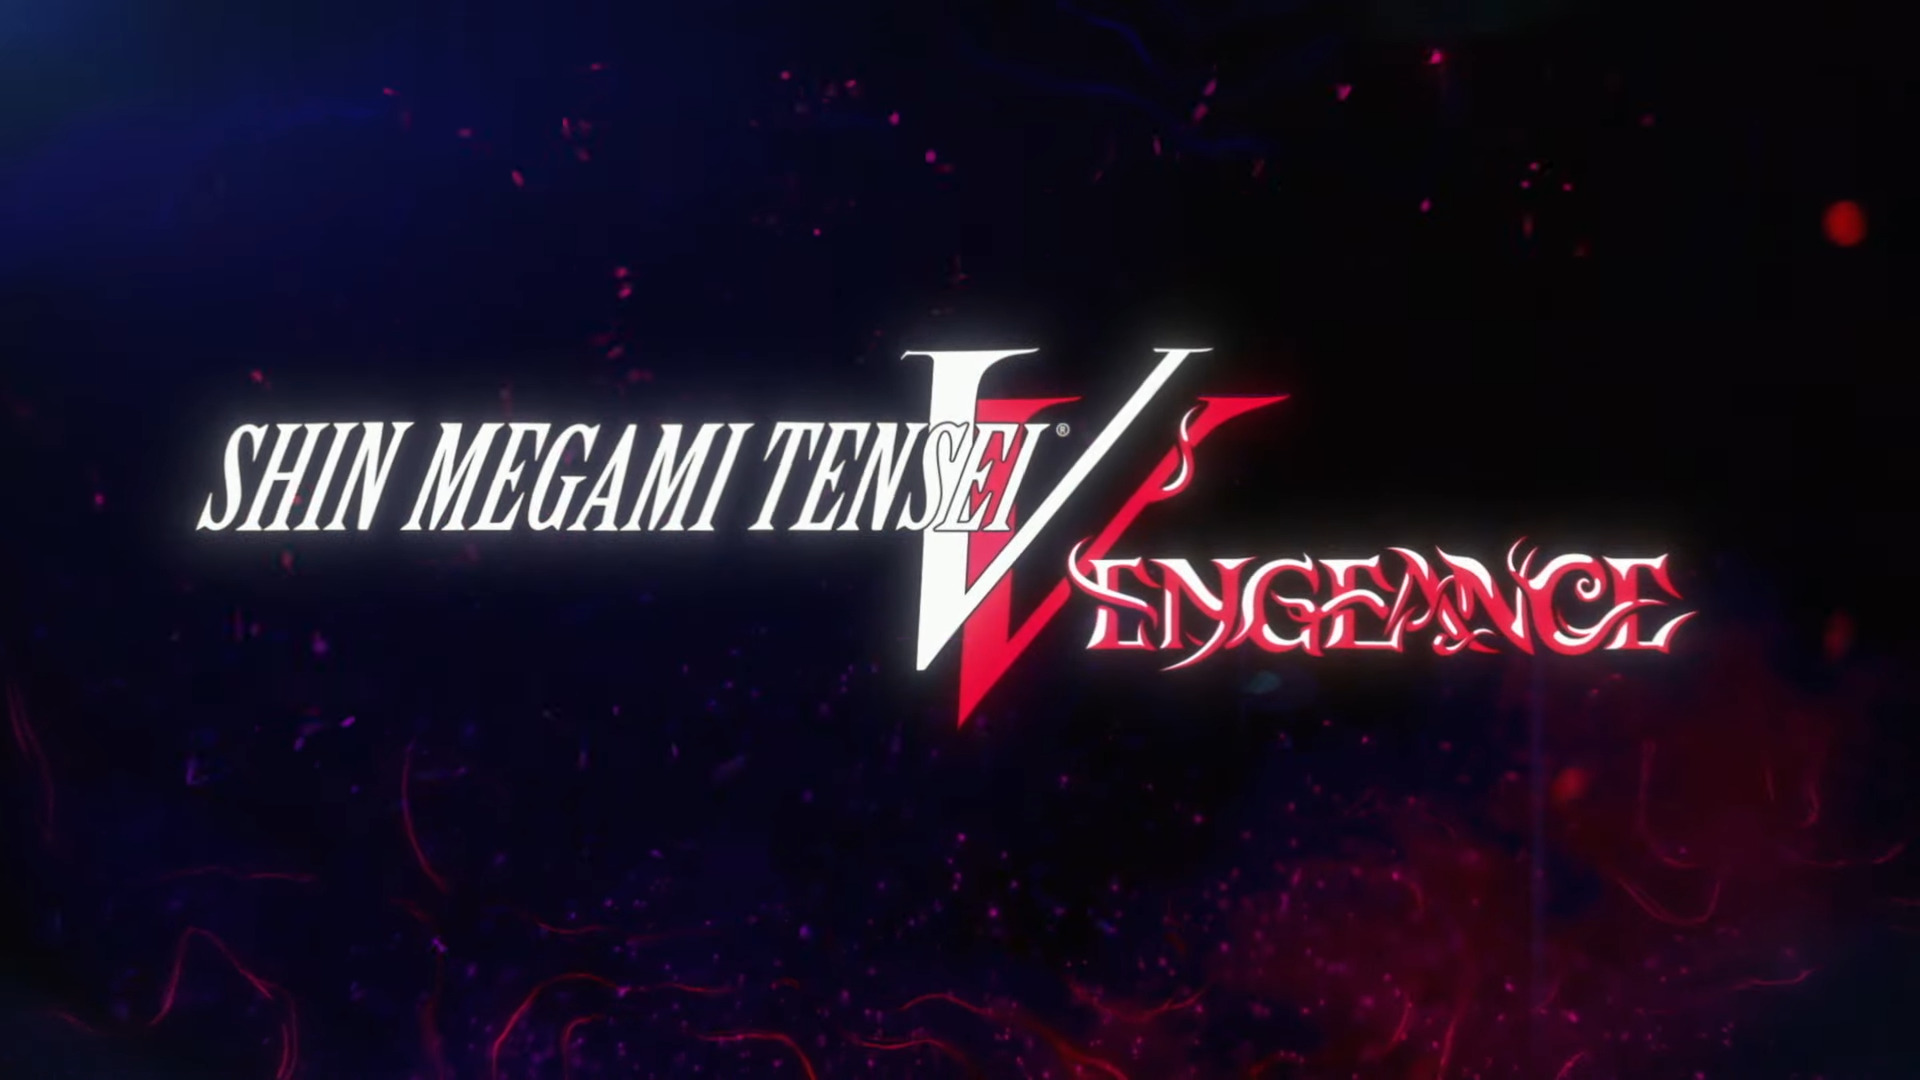 تریلر جدید بازی Shin Megami Tensei 5: Vengeance منتشر شد 